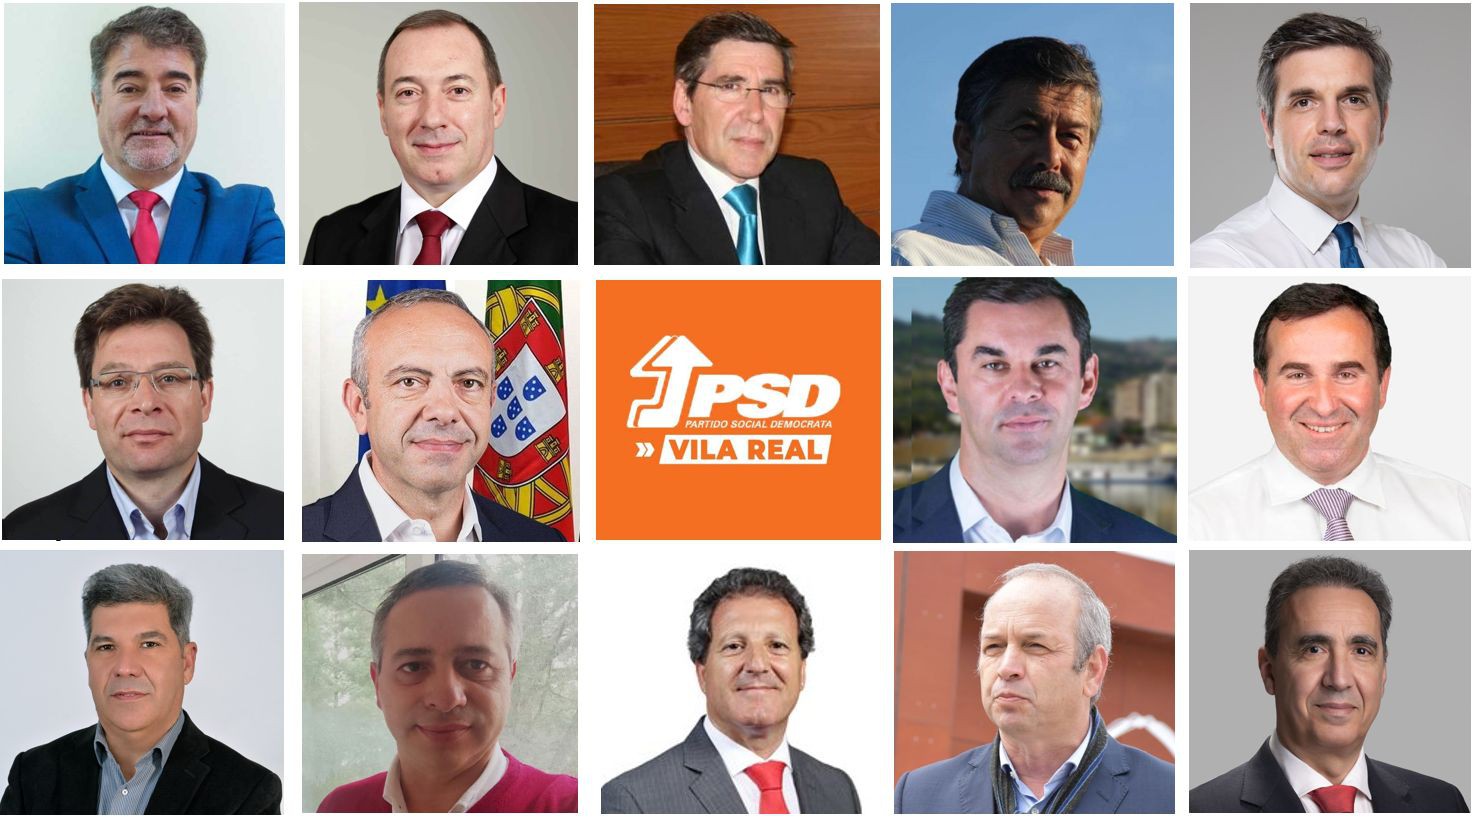 PSD e CDS-PP coligados em sete dos 14 concelhos de Vila Real